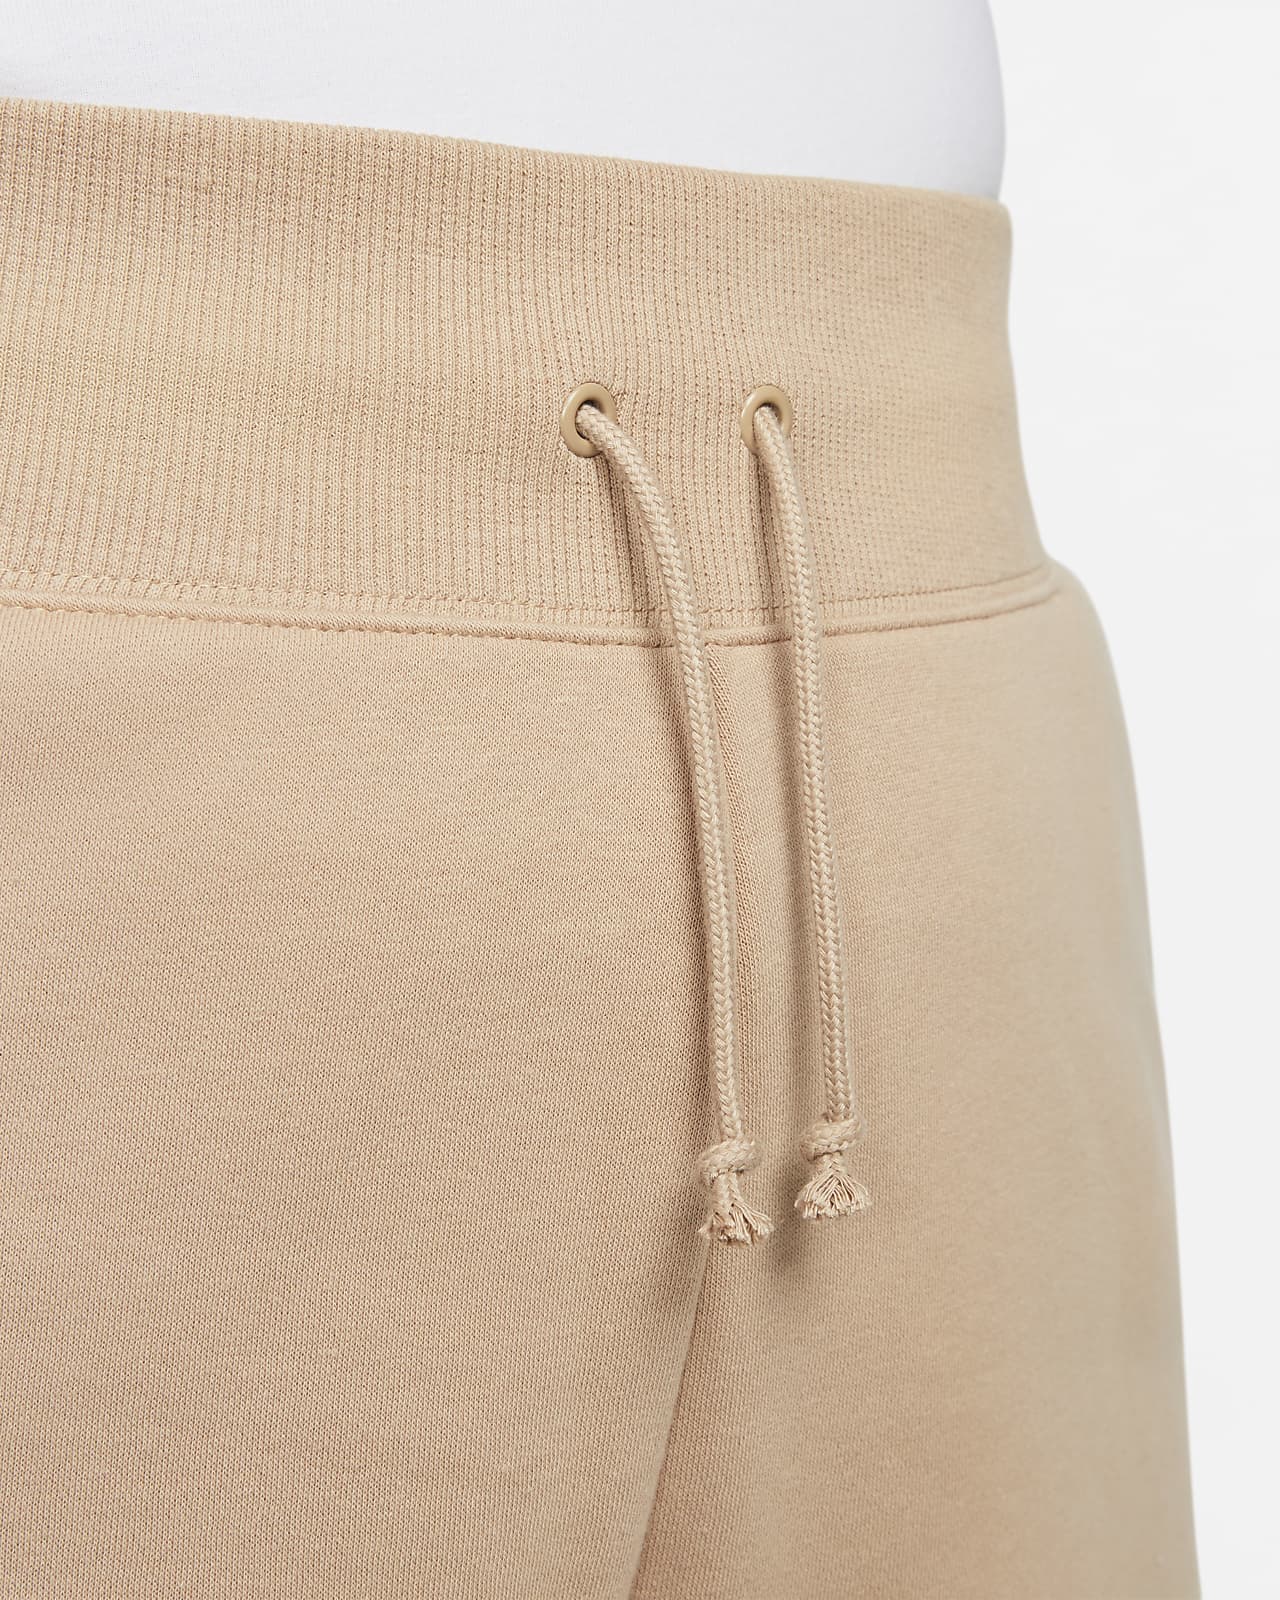 Nike Sportswear Phoenix Fleece Women's High-Waisted Loose-Fit Shorts (Plus  Size)